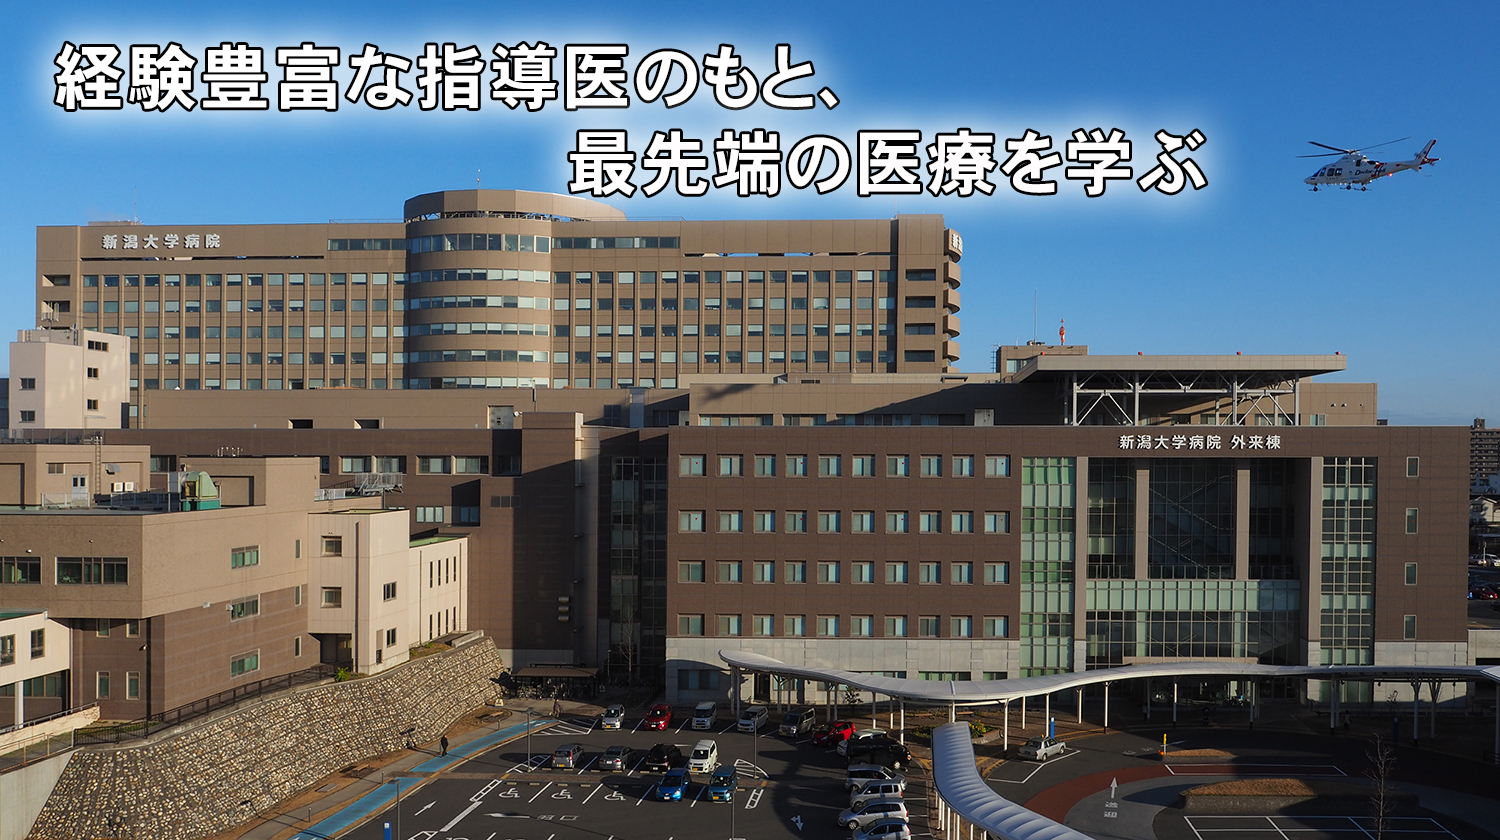 新潟 大学 医 歯学 総合 病院